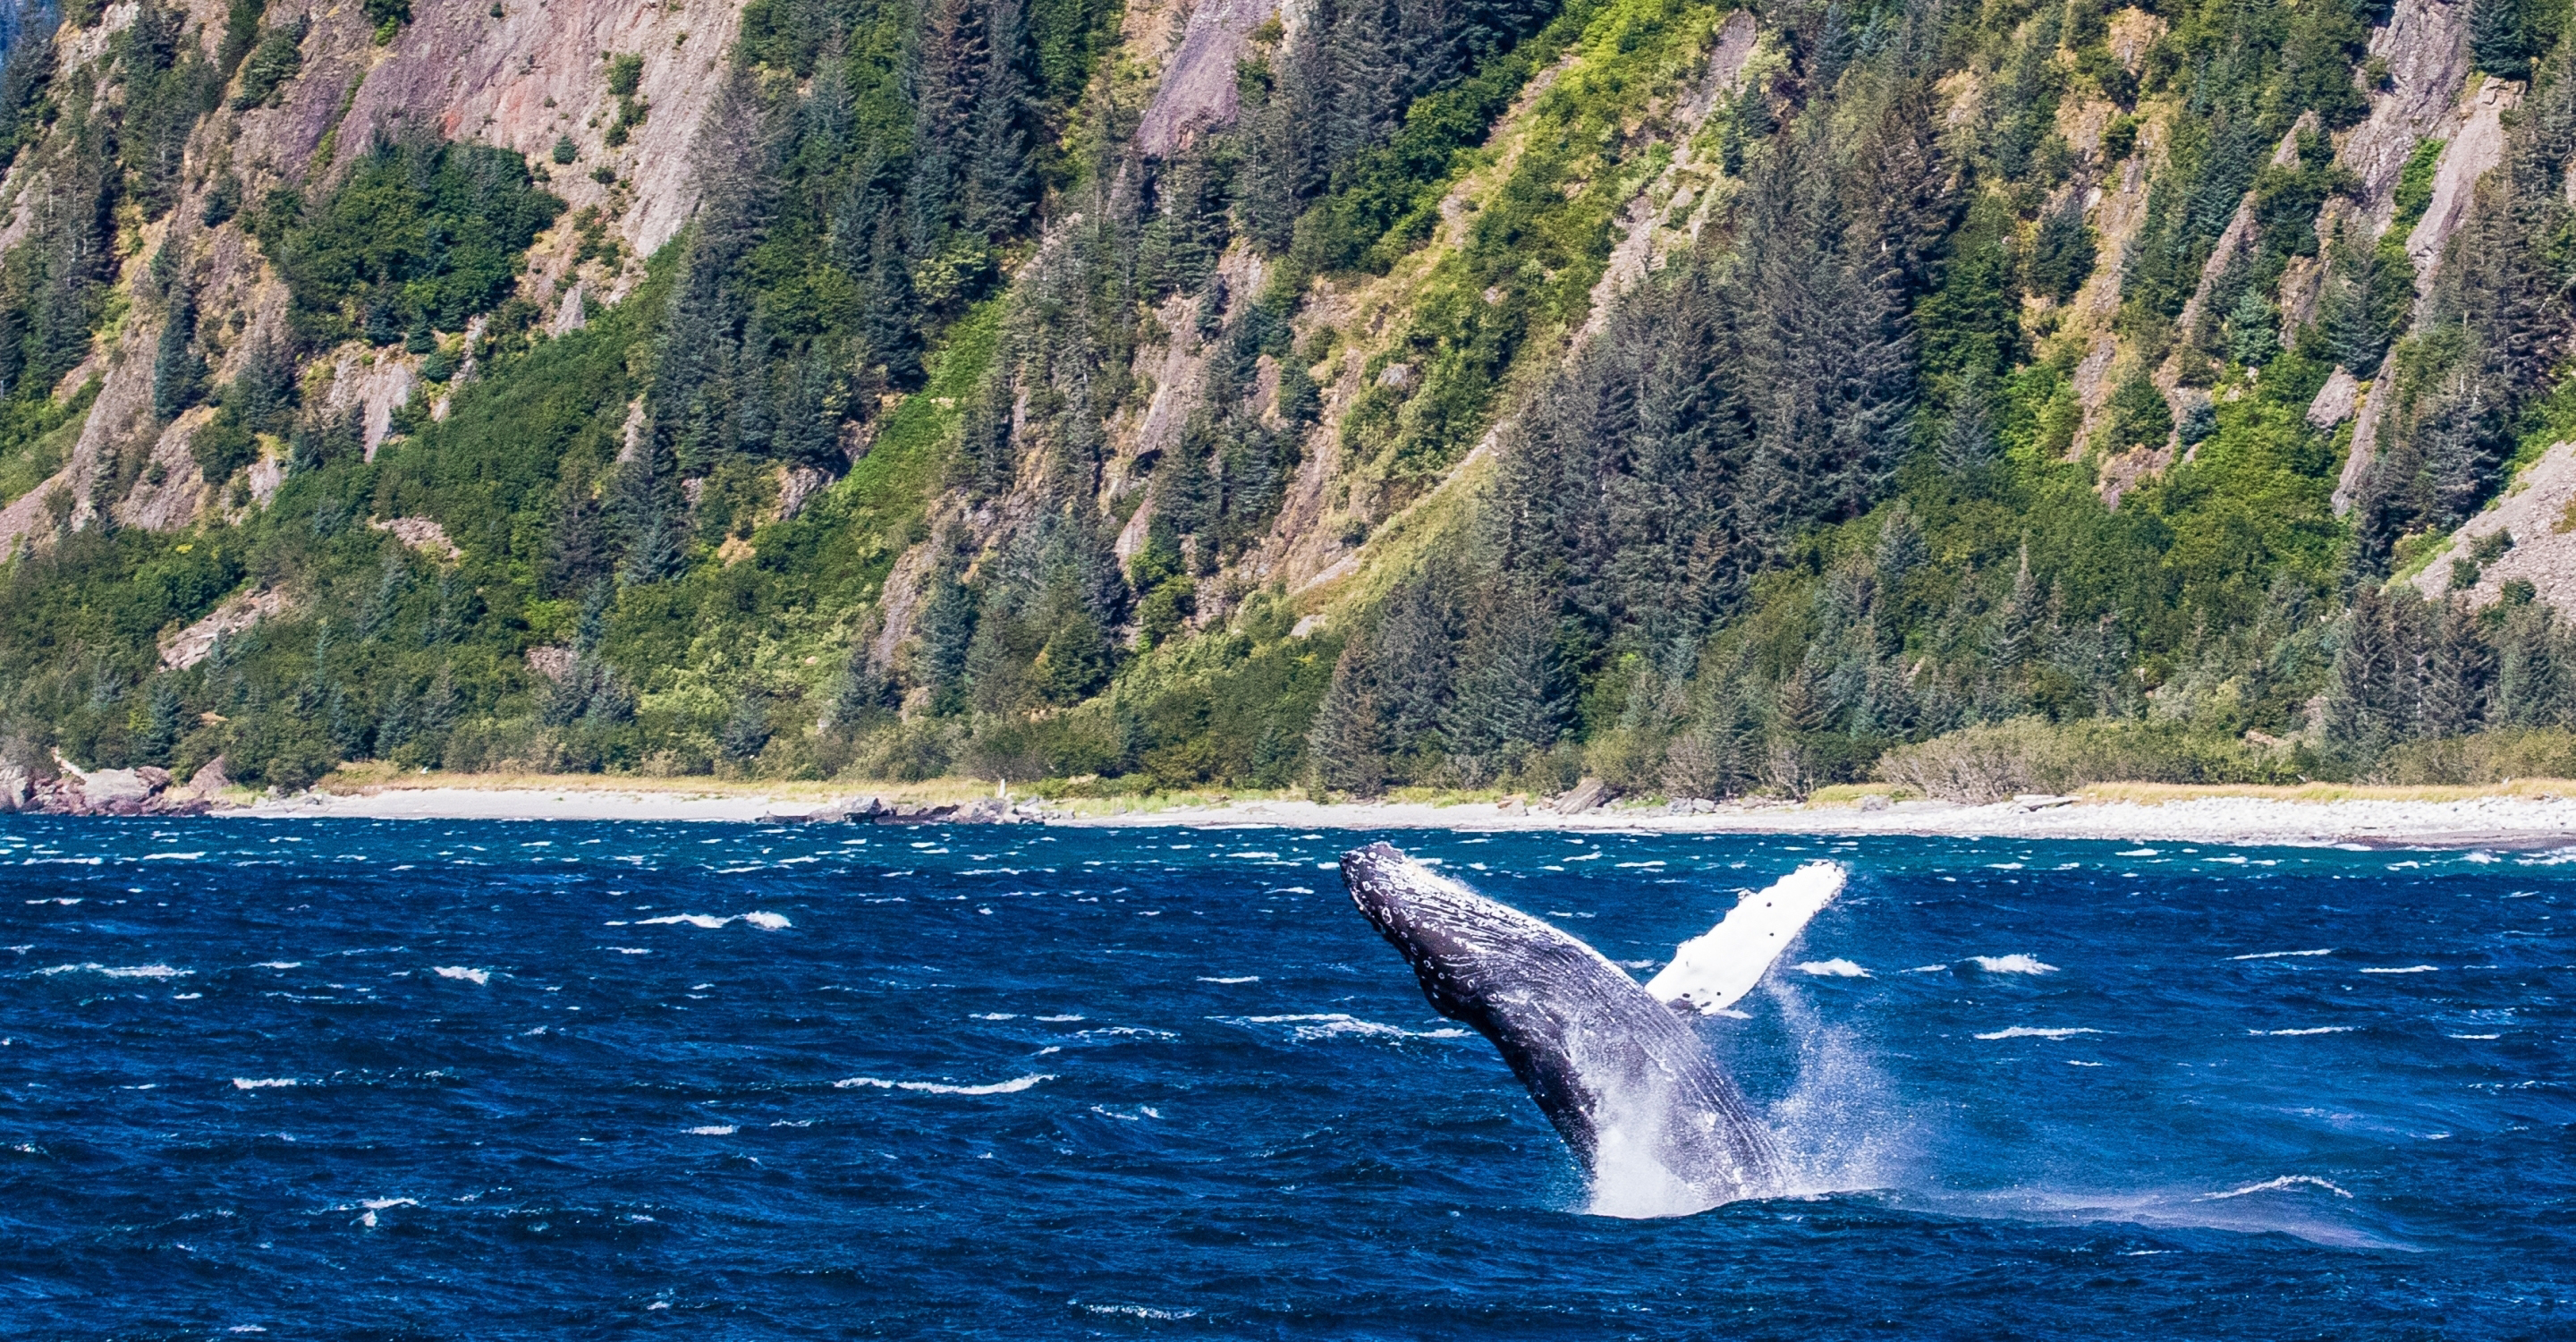 A humpback breaches near the shoreline in Prince William Sound, Alaska, USA